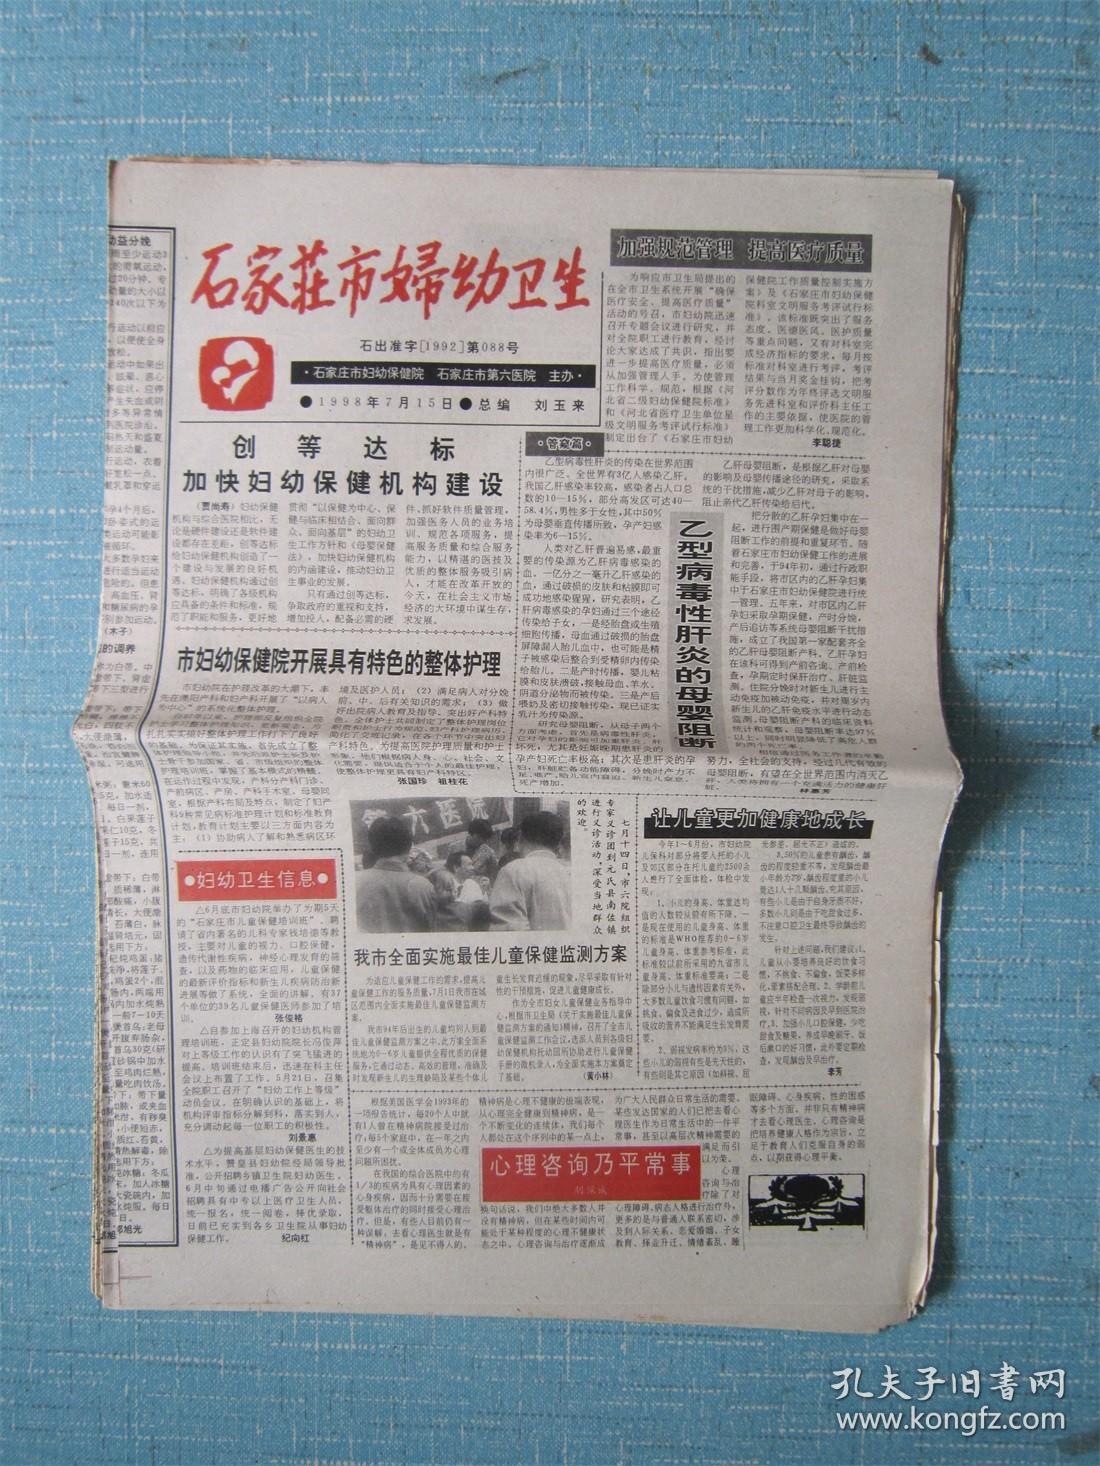 河北普报——石家庄市妇幼卫生 1998.7.15日